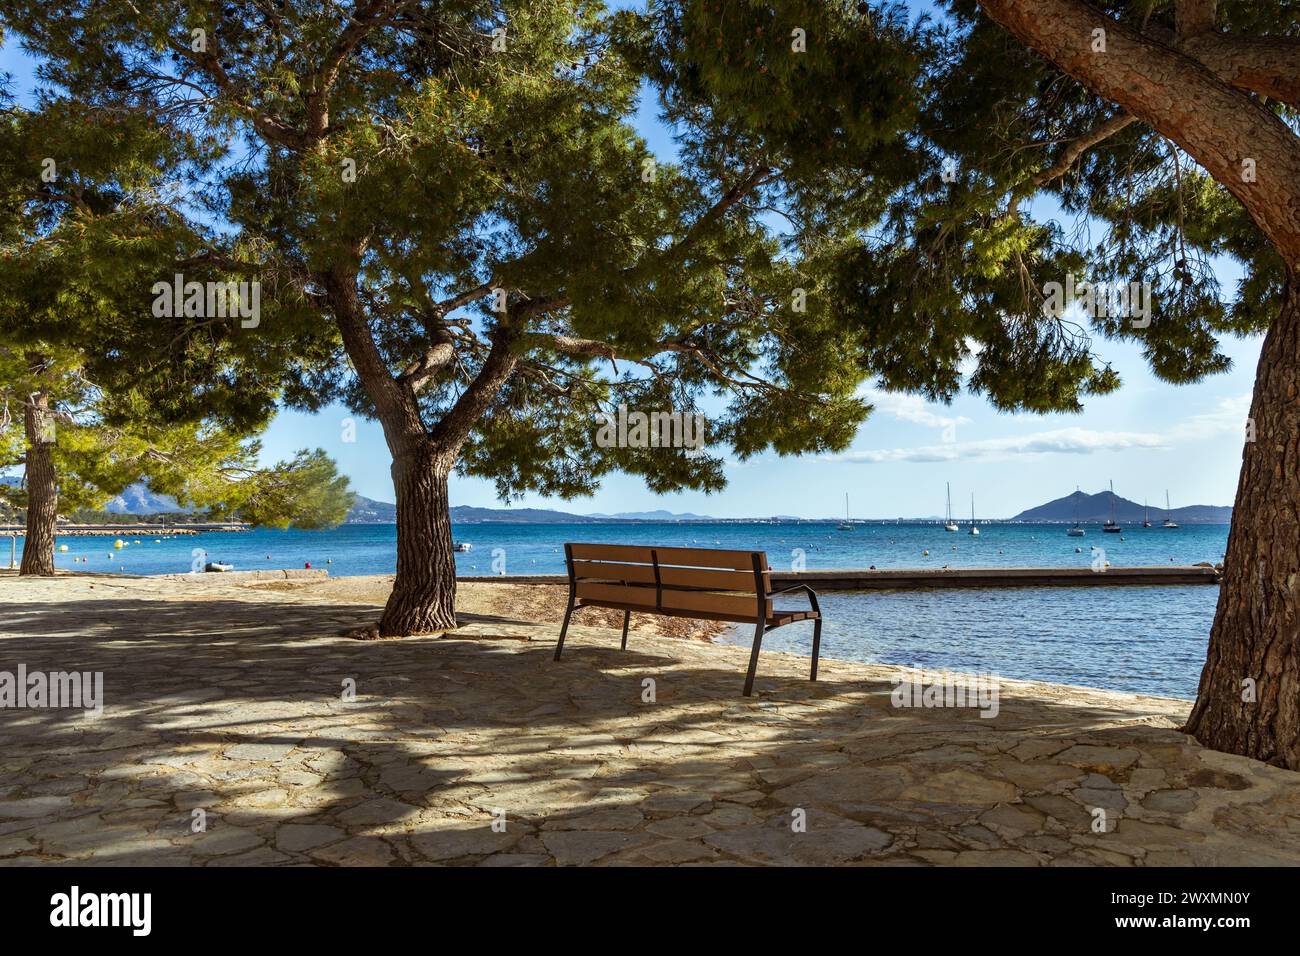 The beautiful bay of Puerto Pollenca, Mallorca, Spain with the Pine walk along the Promenade. Puerto De Pollensa Stock Photo